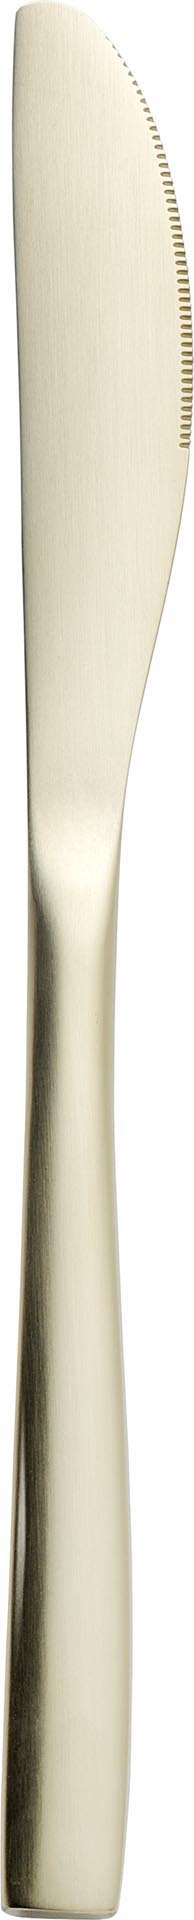 Tafelmesser PVD-beschichtet "champagner" Besteckserie MiCo Mixed Colors satin 3,0mm 18/0